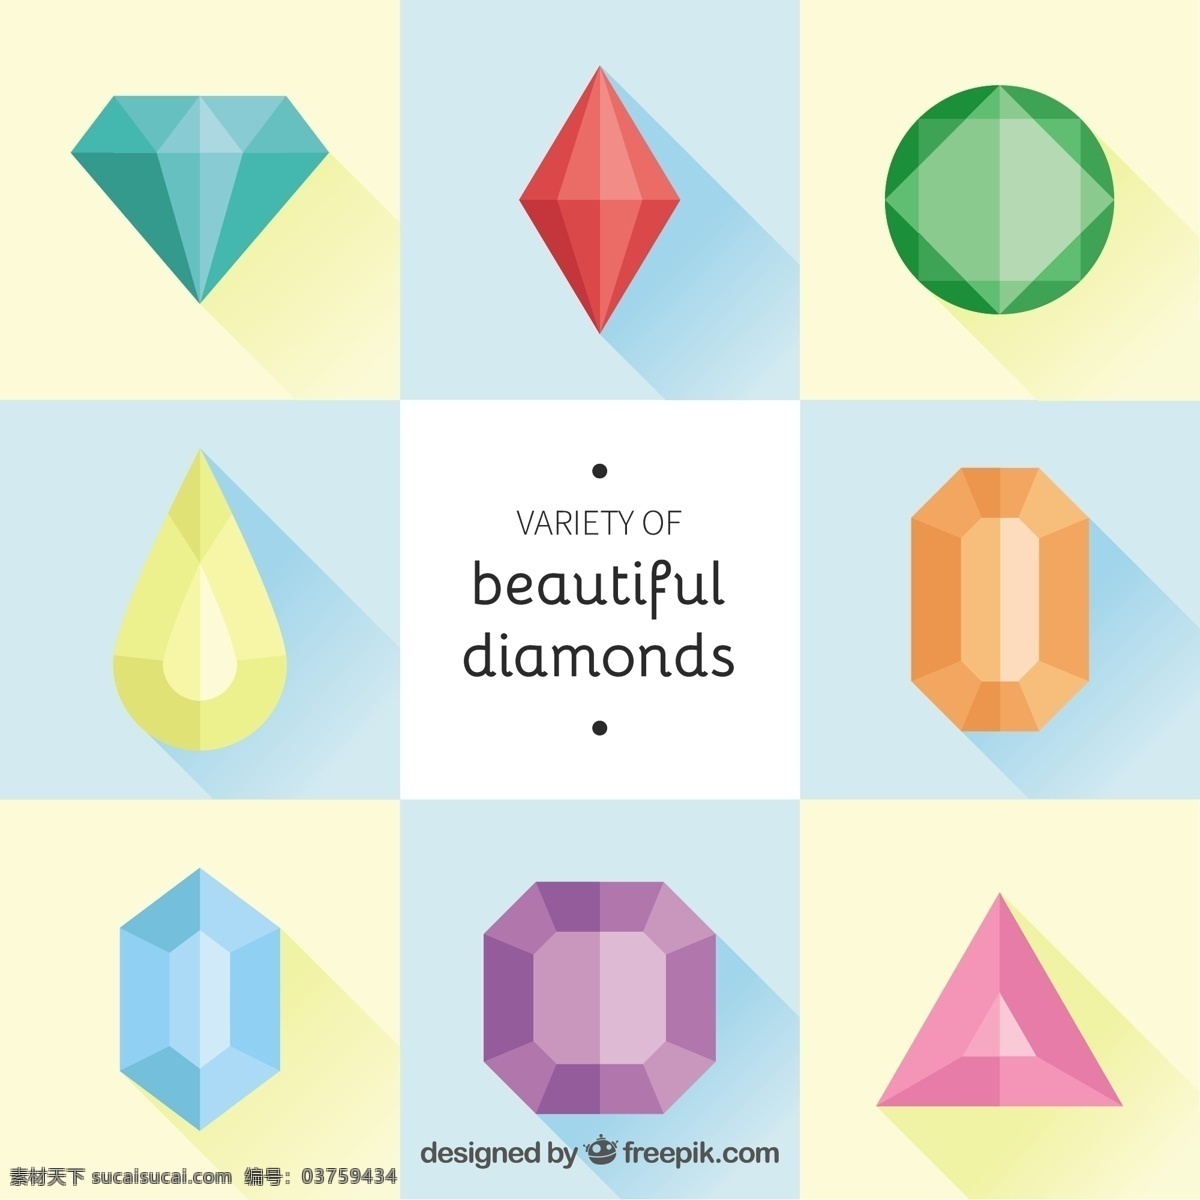 平面设计 中 彩色 钻石 收藏 几何 形状 豪华 平板 颜色 珠宝 石头 几何图形 水晶 珍宝 光明 宝石 闪亮